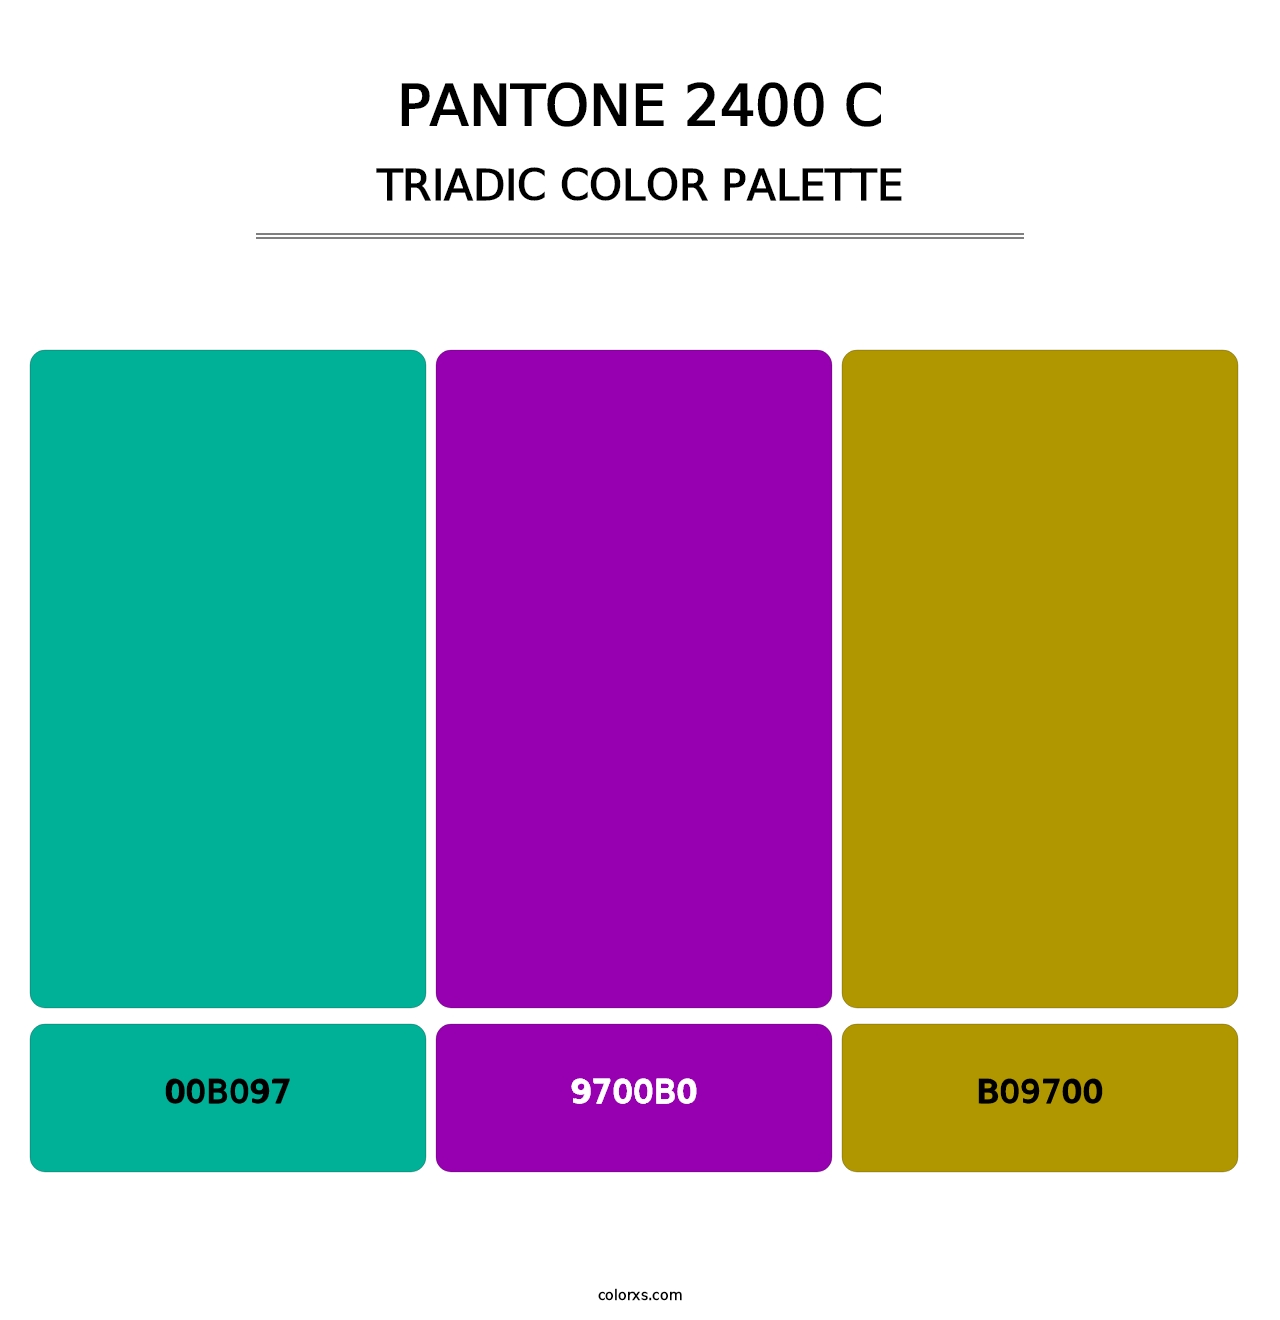 PANTONE 2400 C - Triadic Color Palette